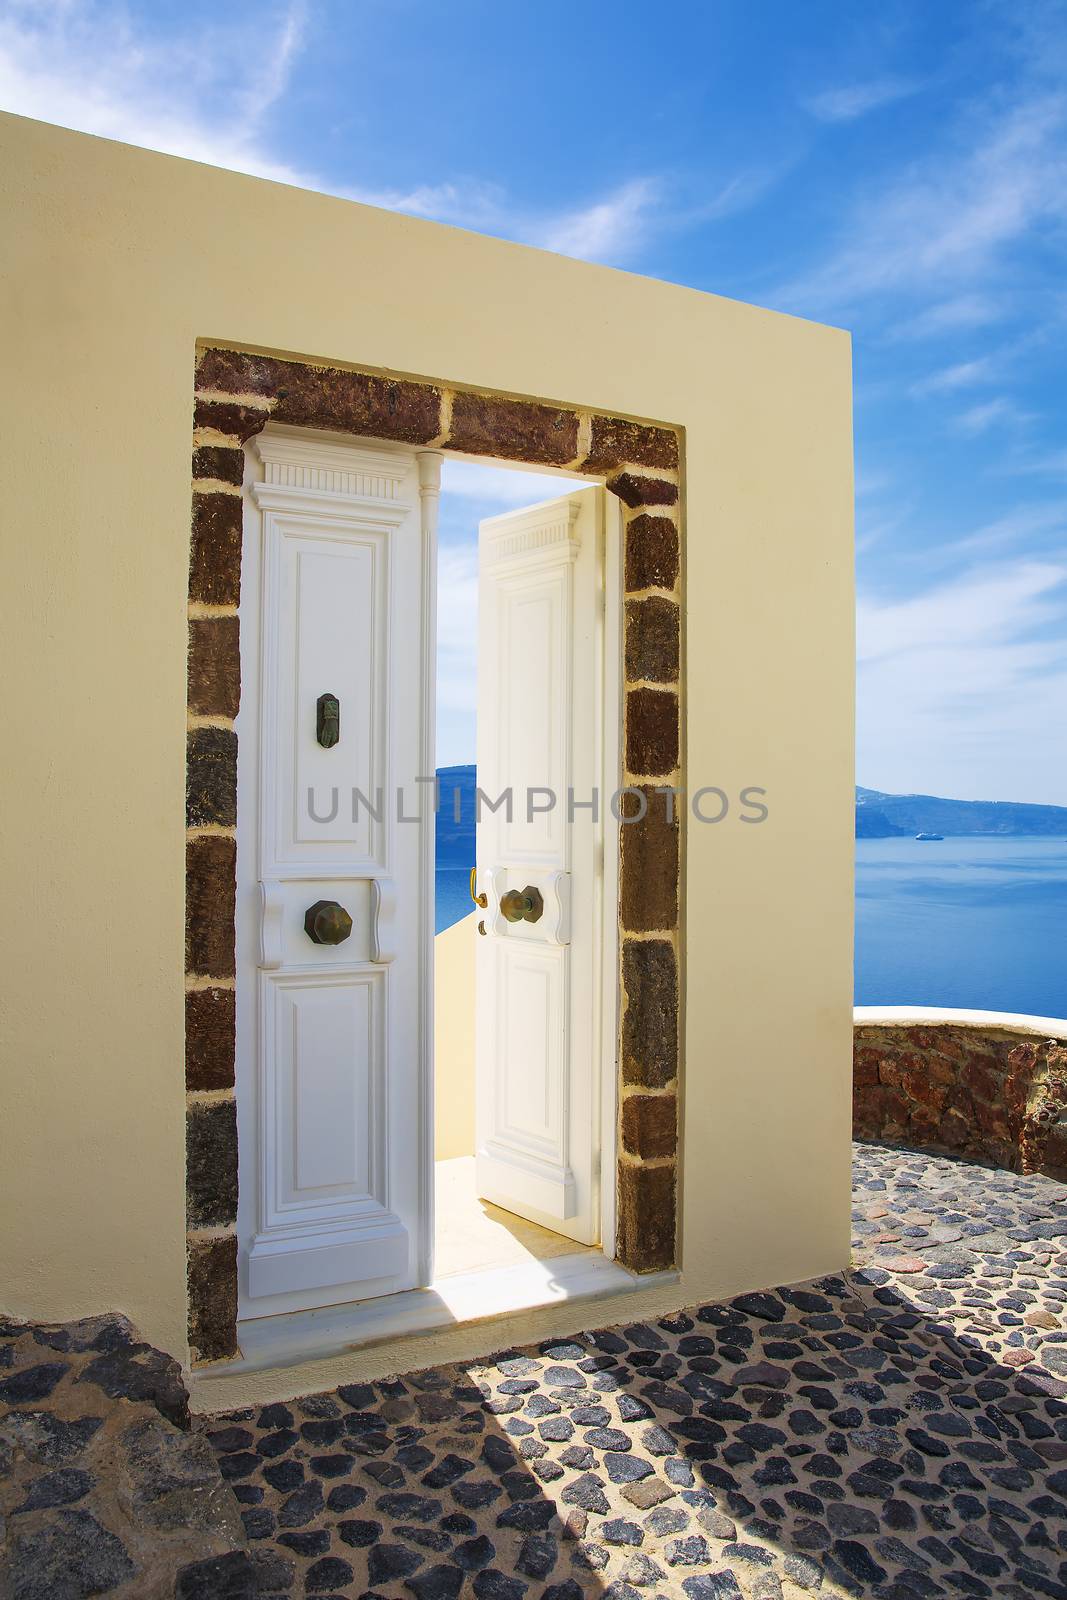 Sea view and architecture in Oia, Santorini, Greece